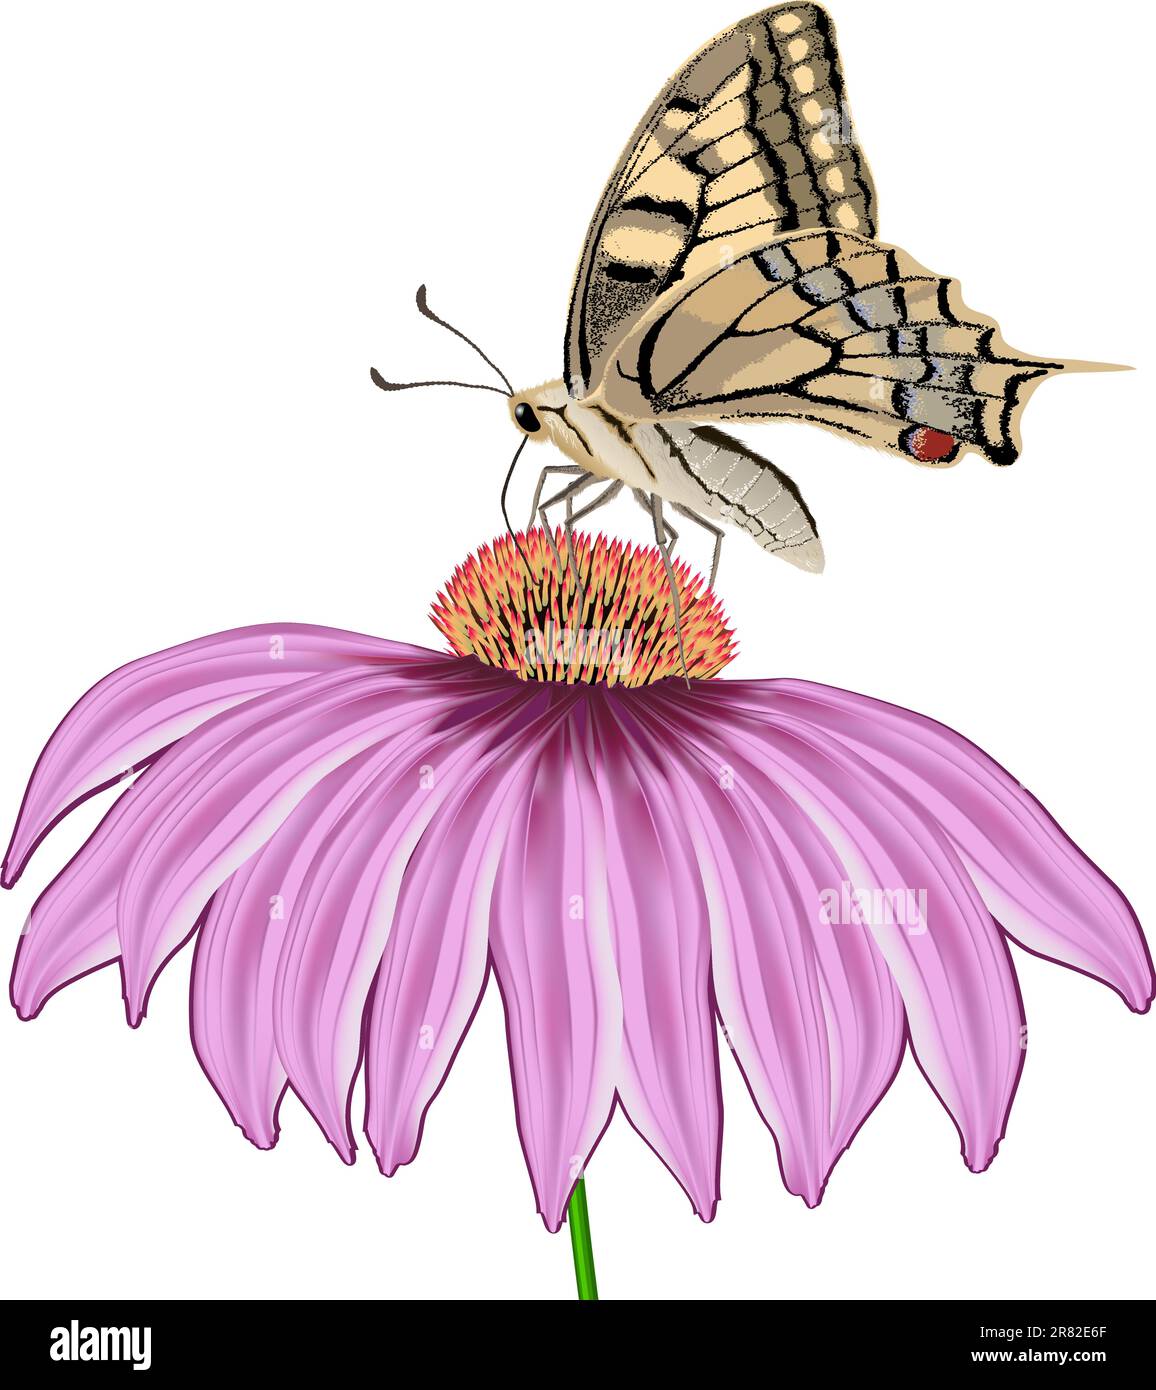 Schmetterling auf einer Blume Echinacea isoliert auf Weiß Stock Vektor